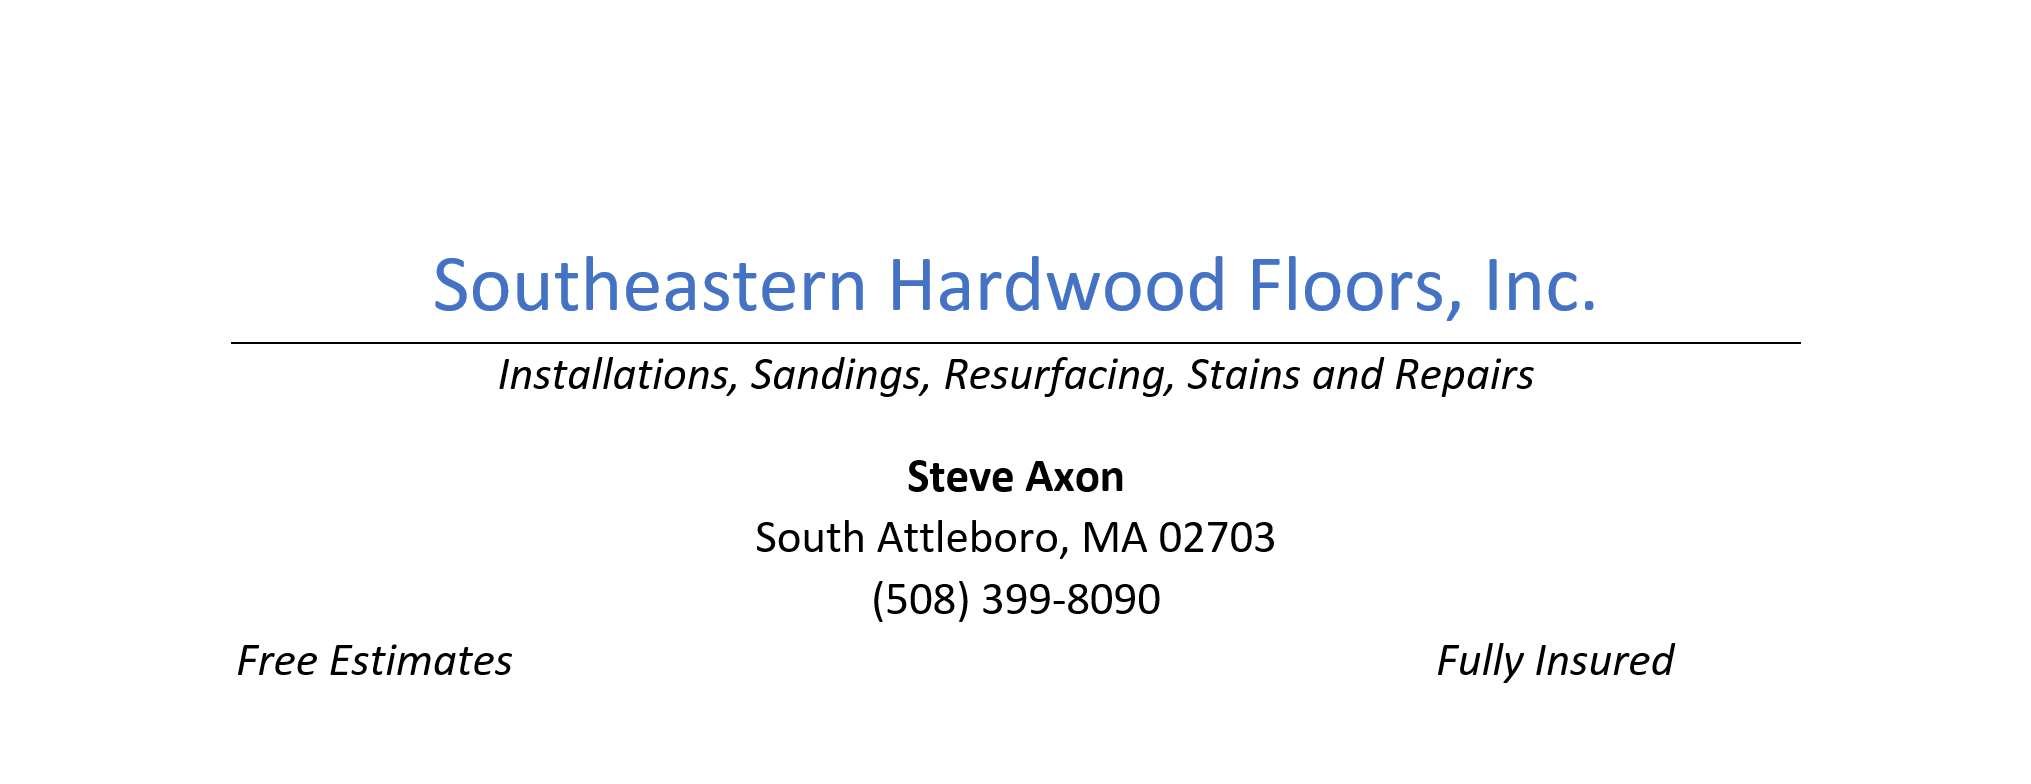 Southeastern Hardwood Floors